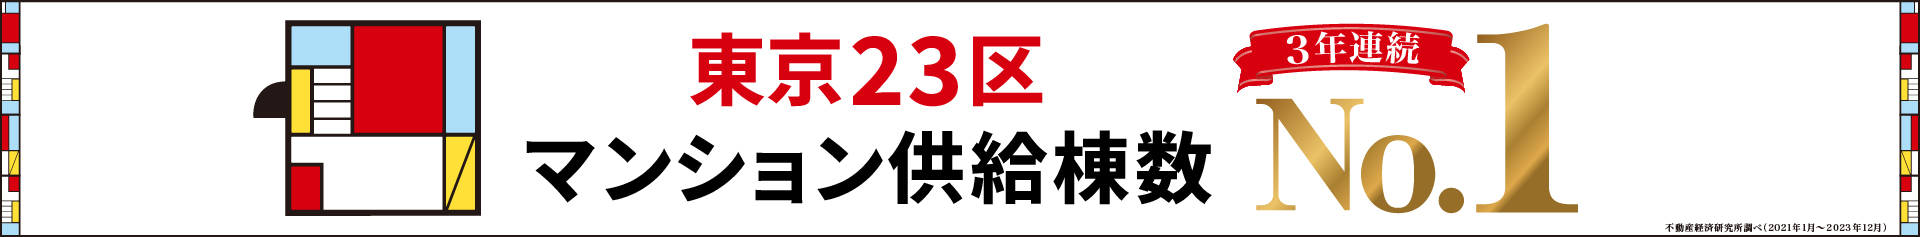 東京23区マンション供給棟数3年連続No.1